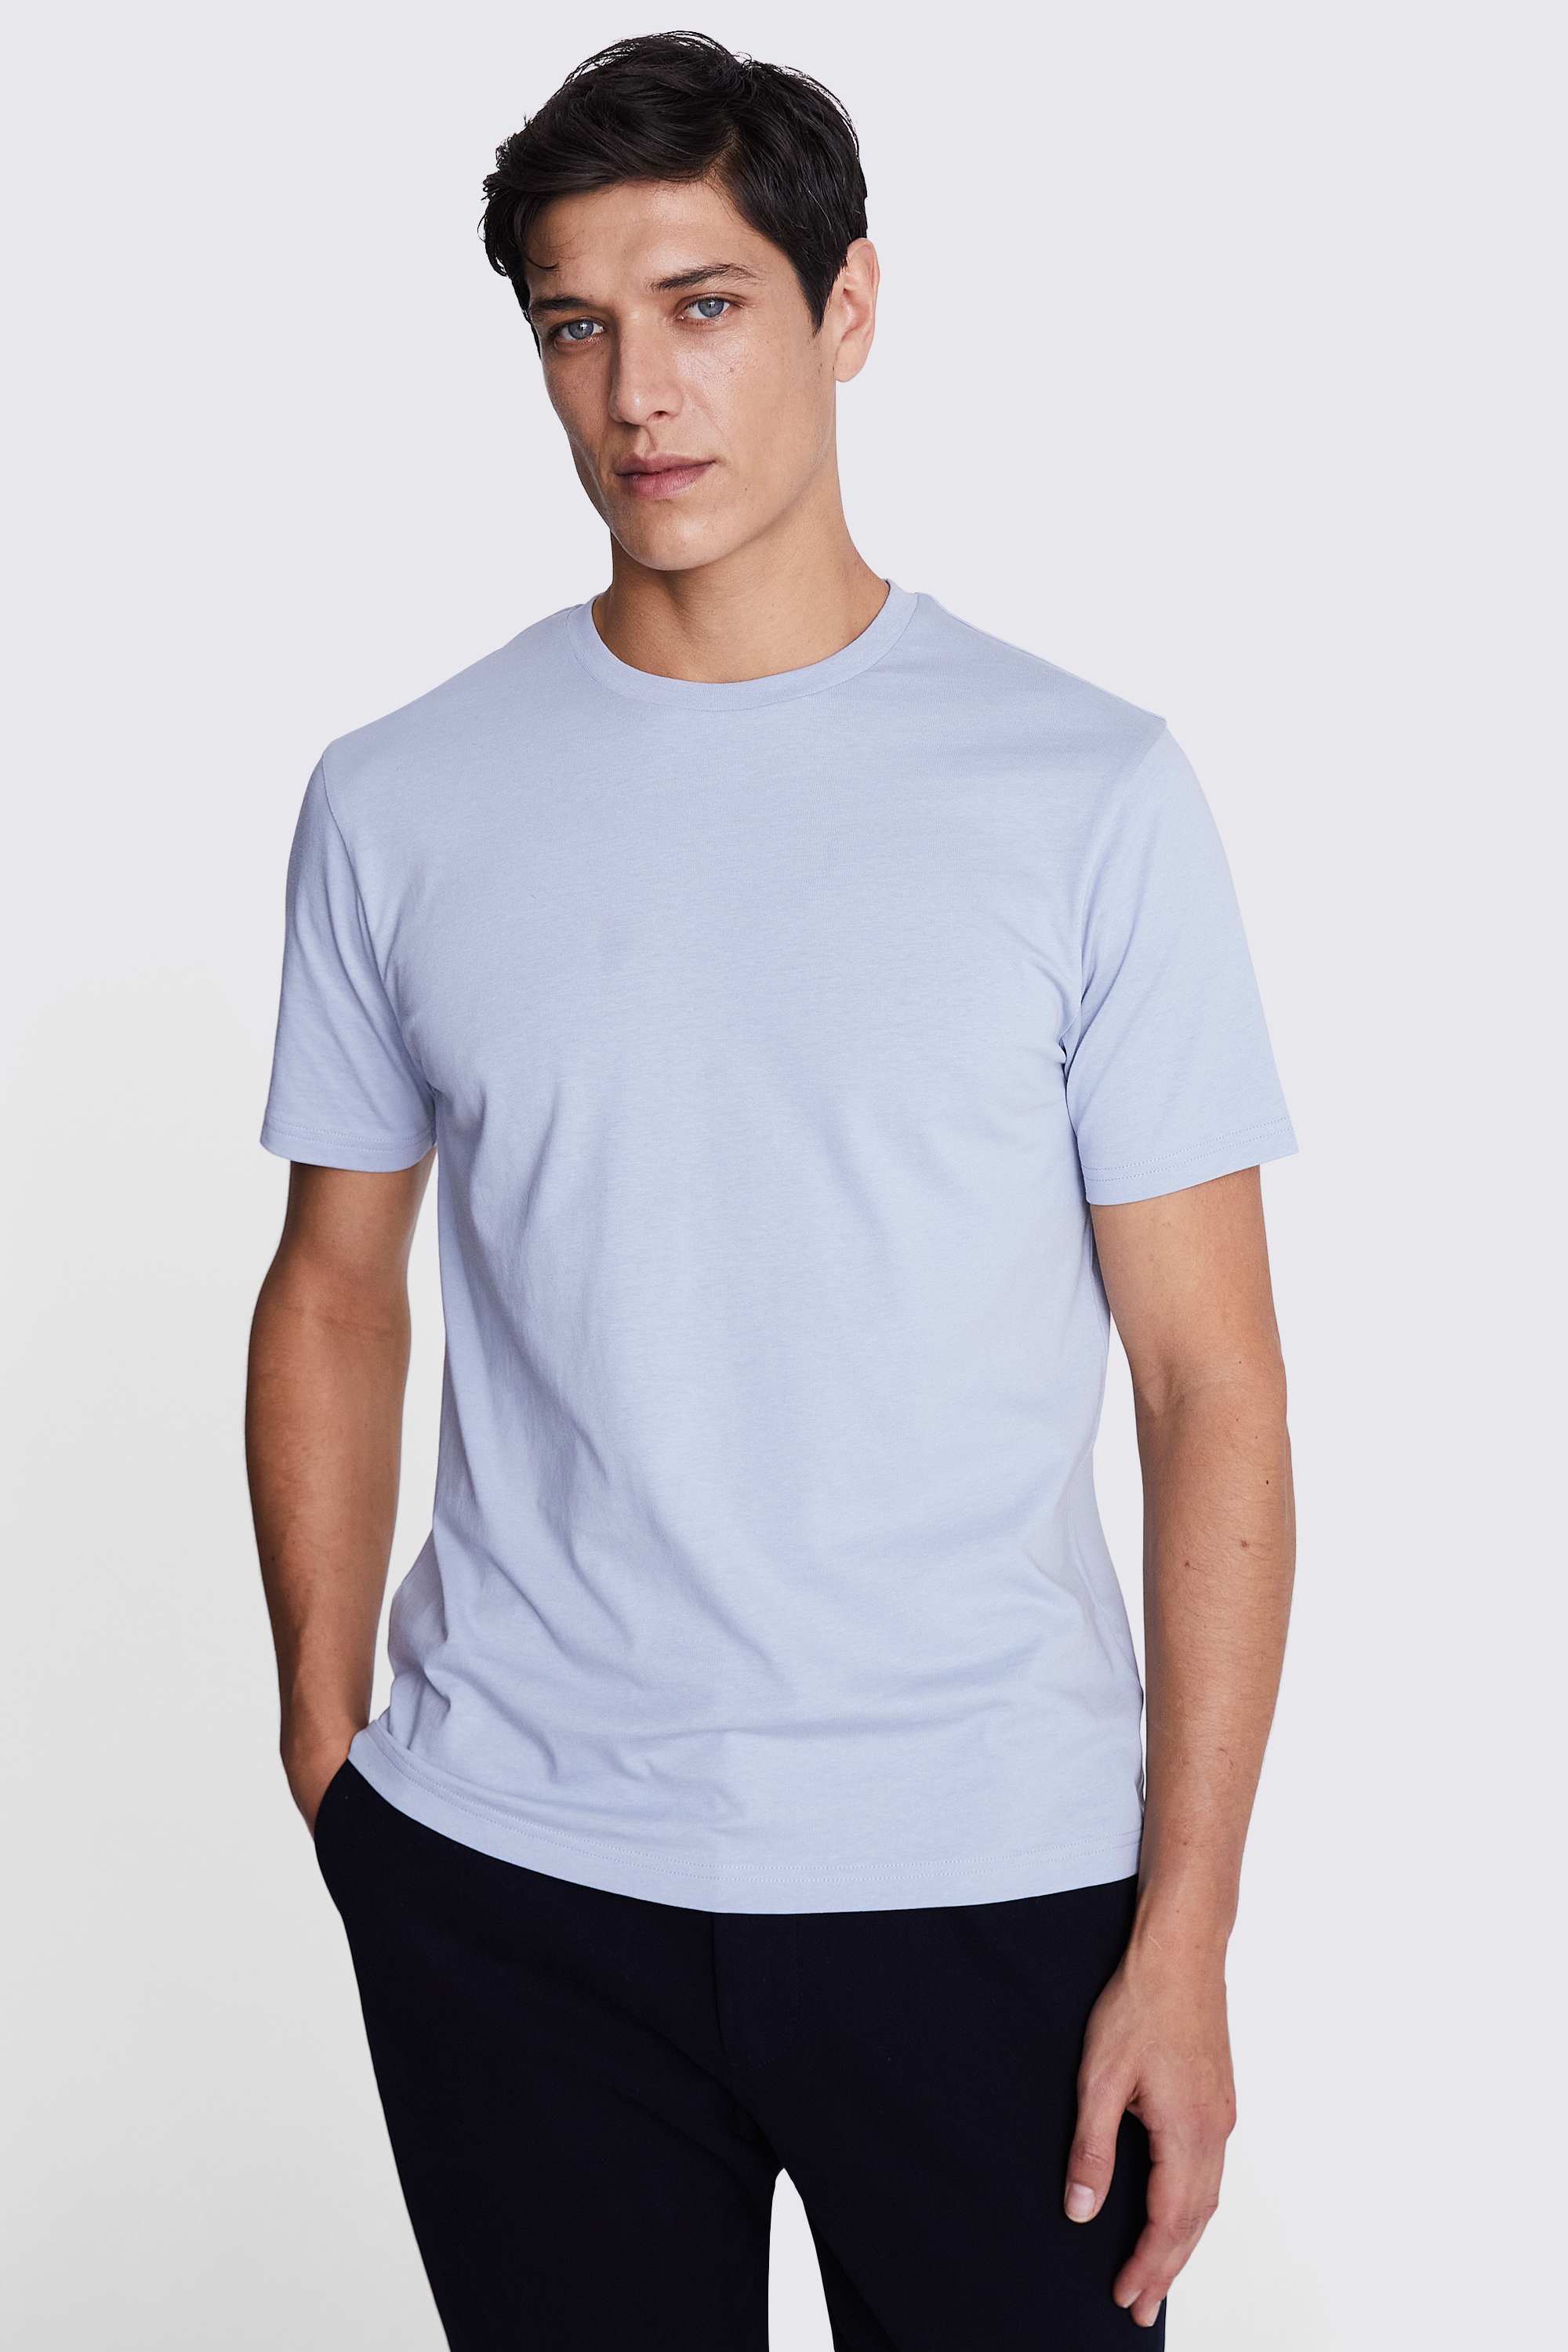 Light Blue Crew-Neck T-Shirt | Buy Online at Moss